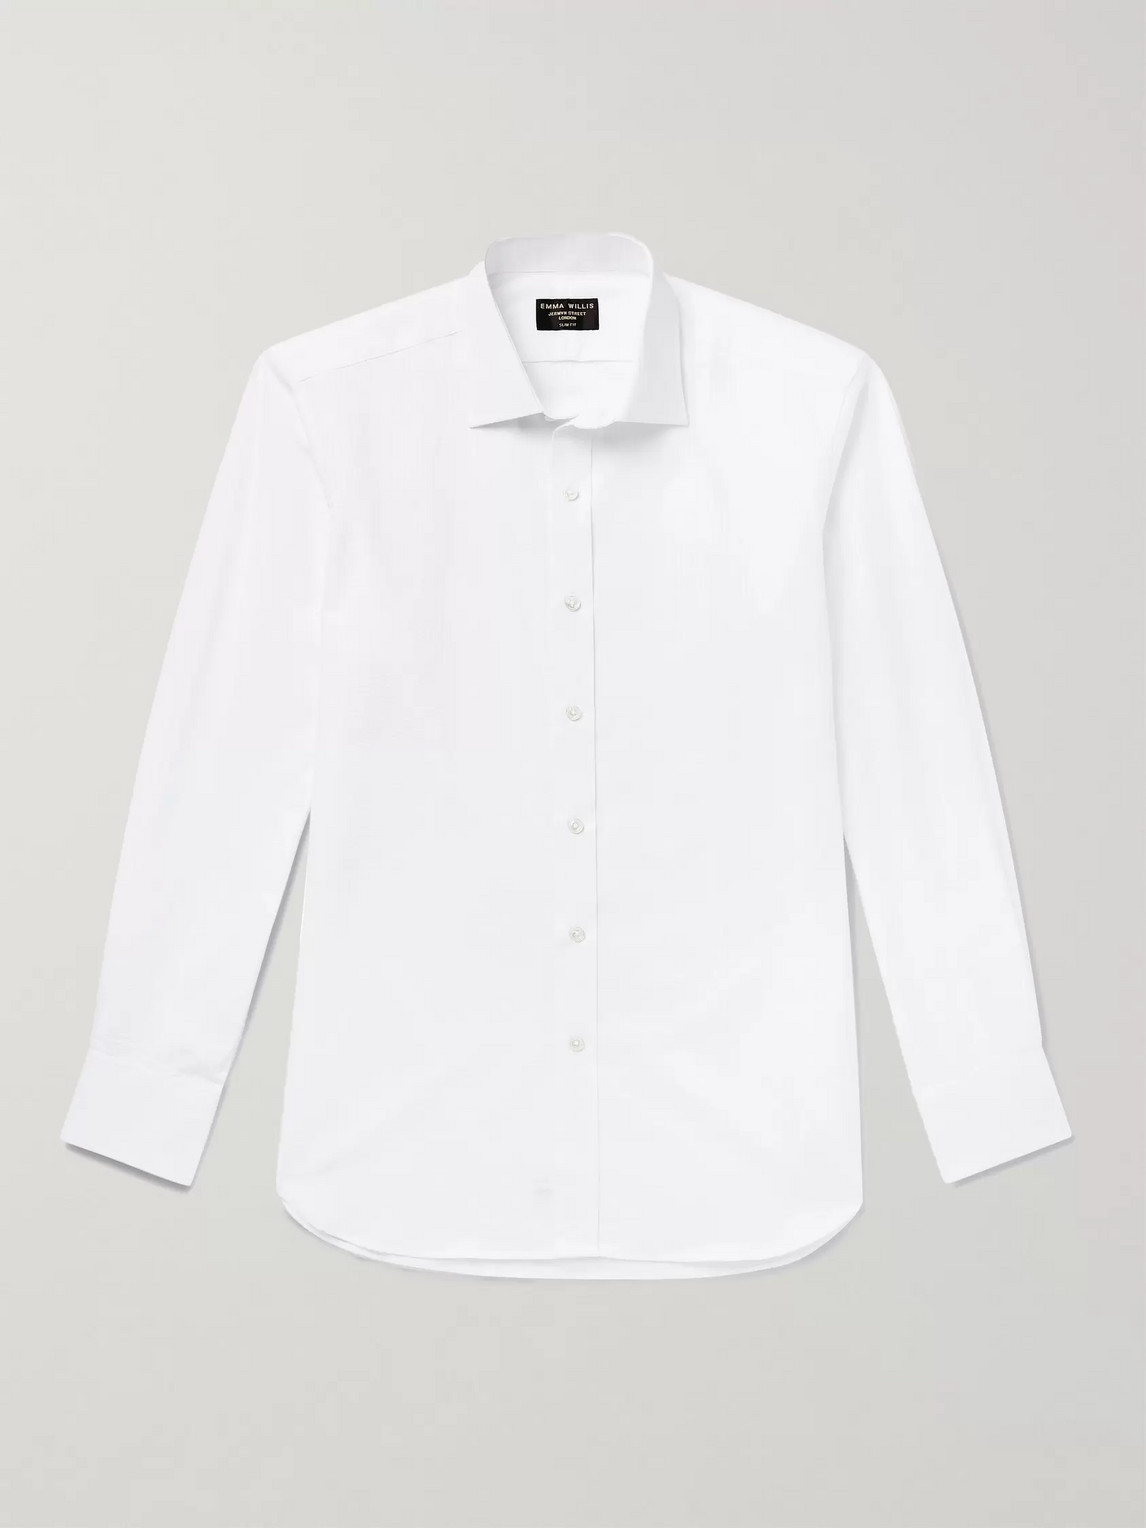 Emma Willis Cotton-seersucker Shirt In White